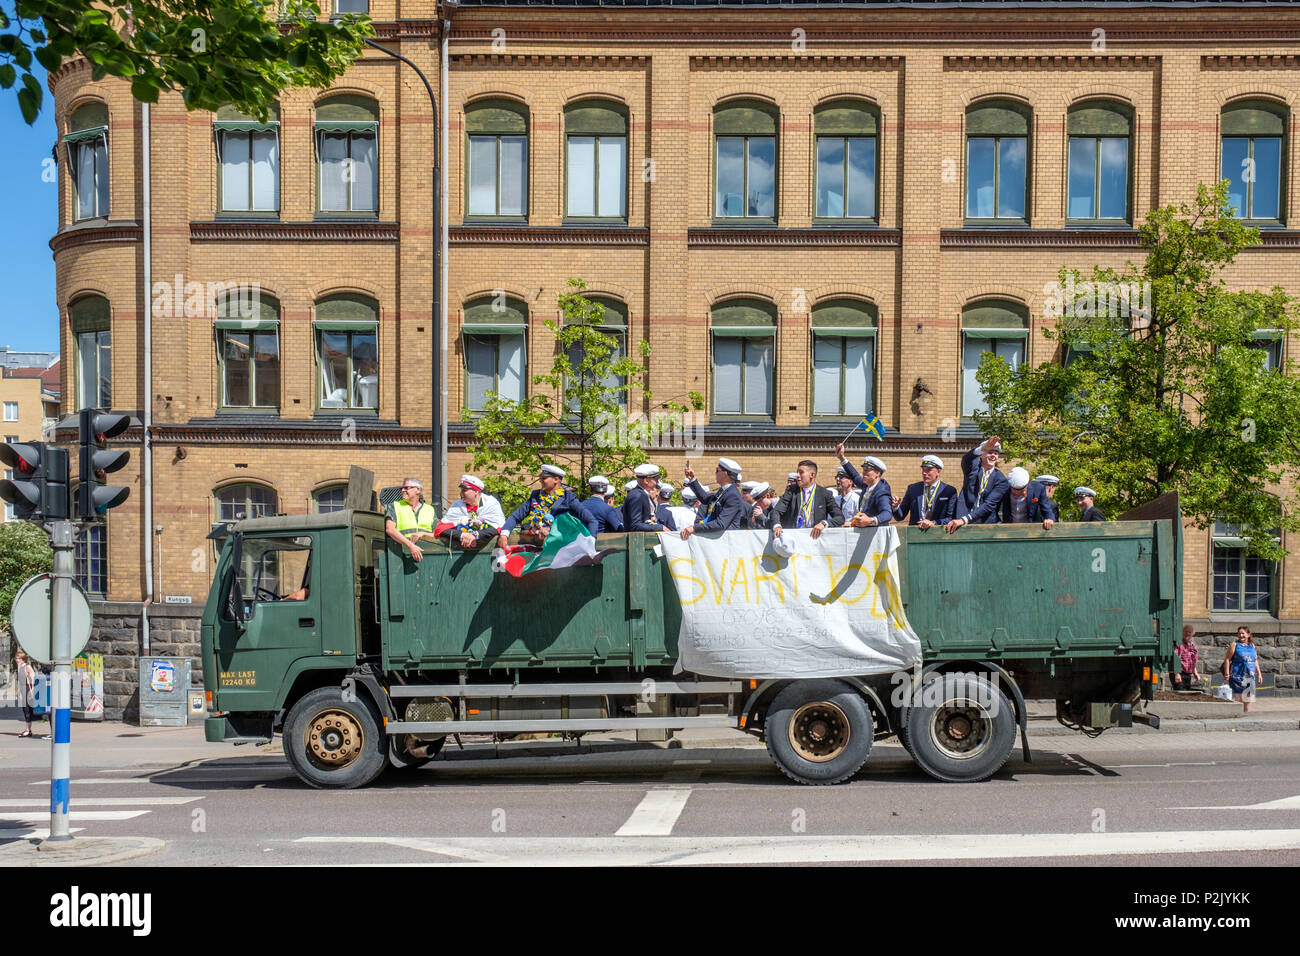 Día de Graduación de gimnasio en el centro de la ciudad de Norrkoping. Estudiantes celebrando y desfilan en camas de camiones es una tradición en muchas ciudades suecas. Foto de stock